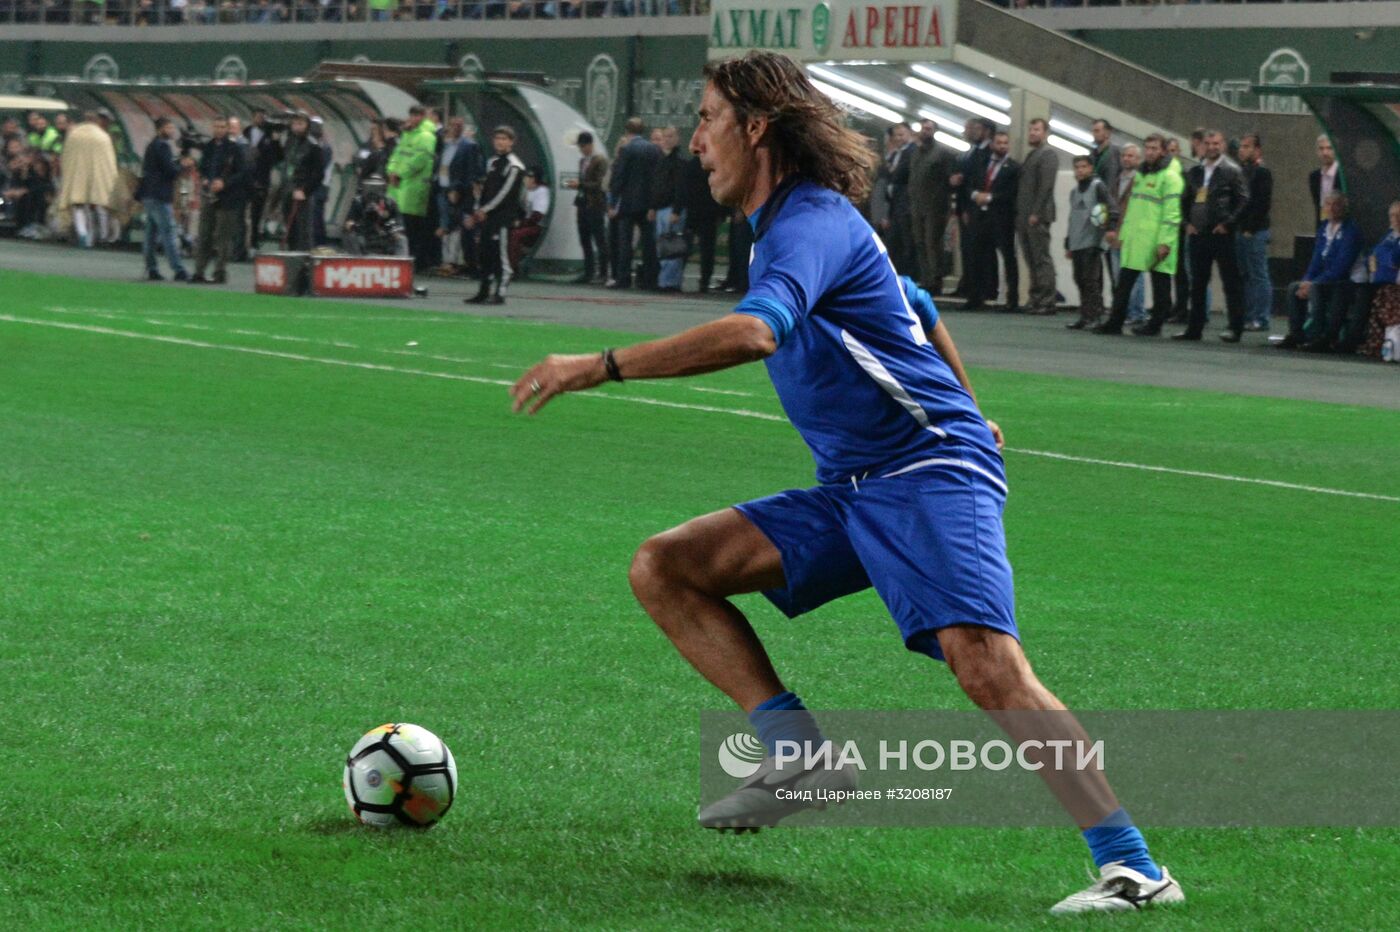 Футбольный матч между командами клубов "Клуб Италия" и "Лидер-65" в Грозном